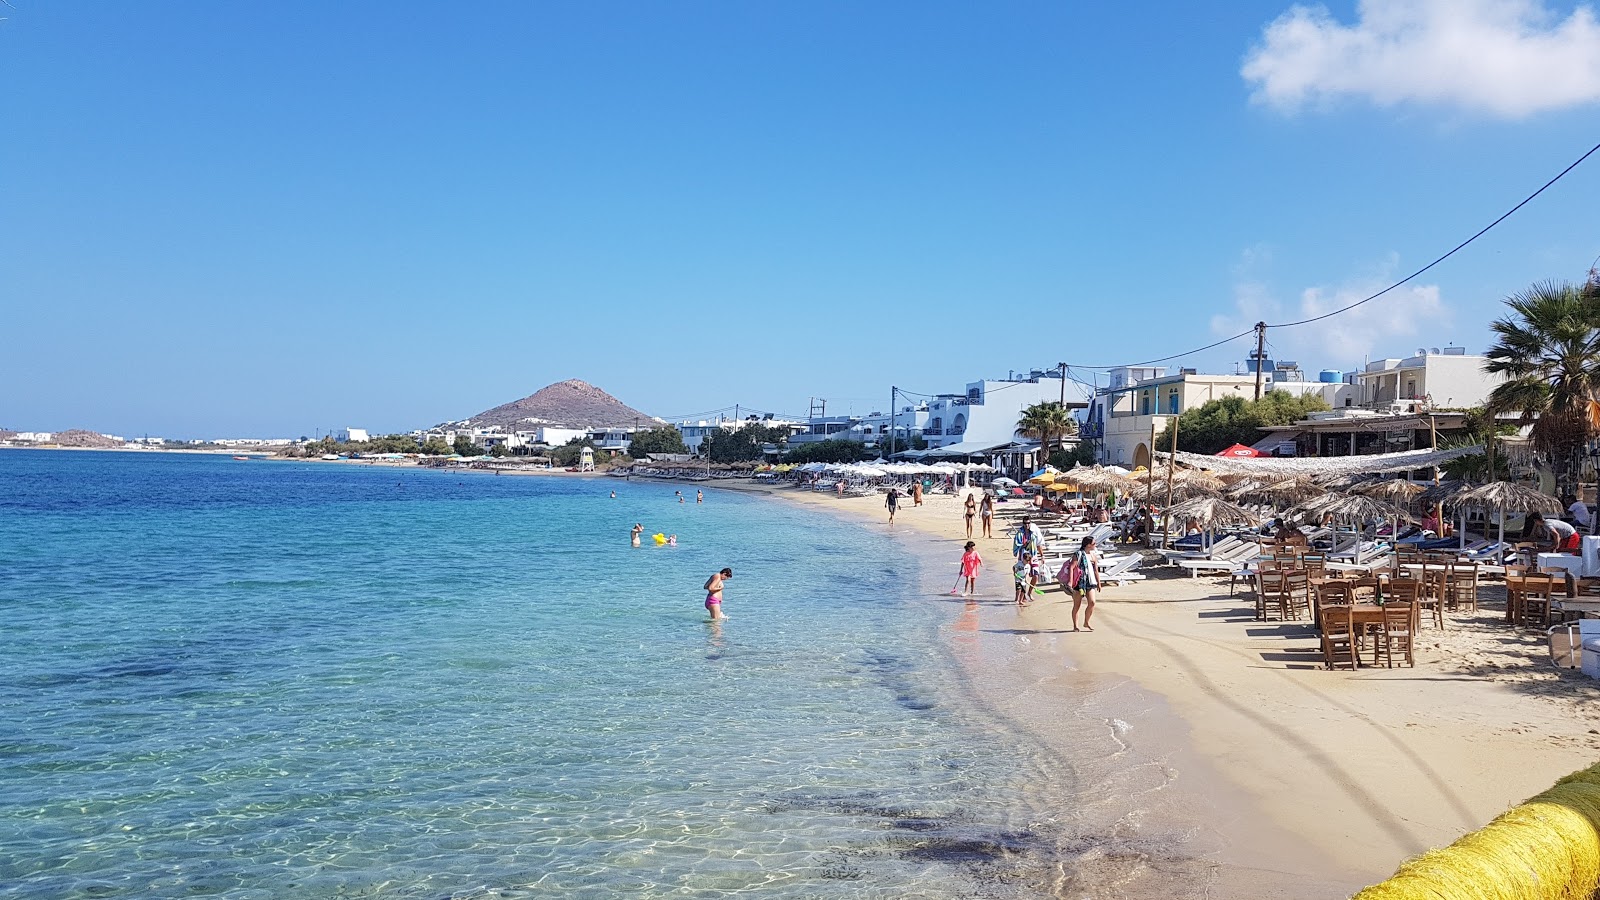 Agia Anna Plajı'in fotoğrafı parlak ince kum yüzey ile